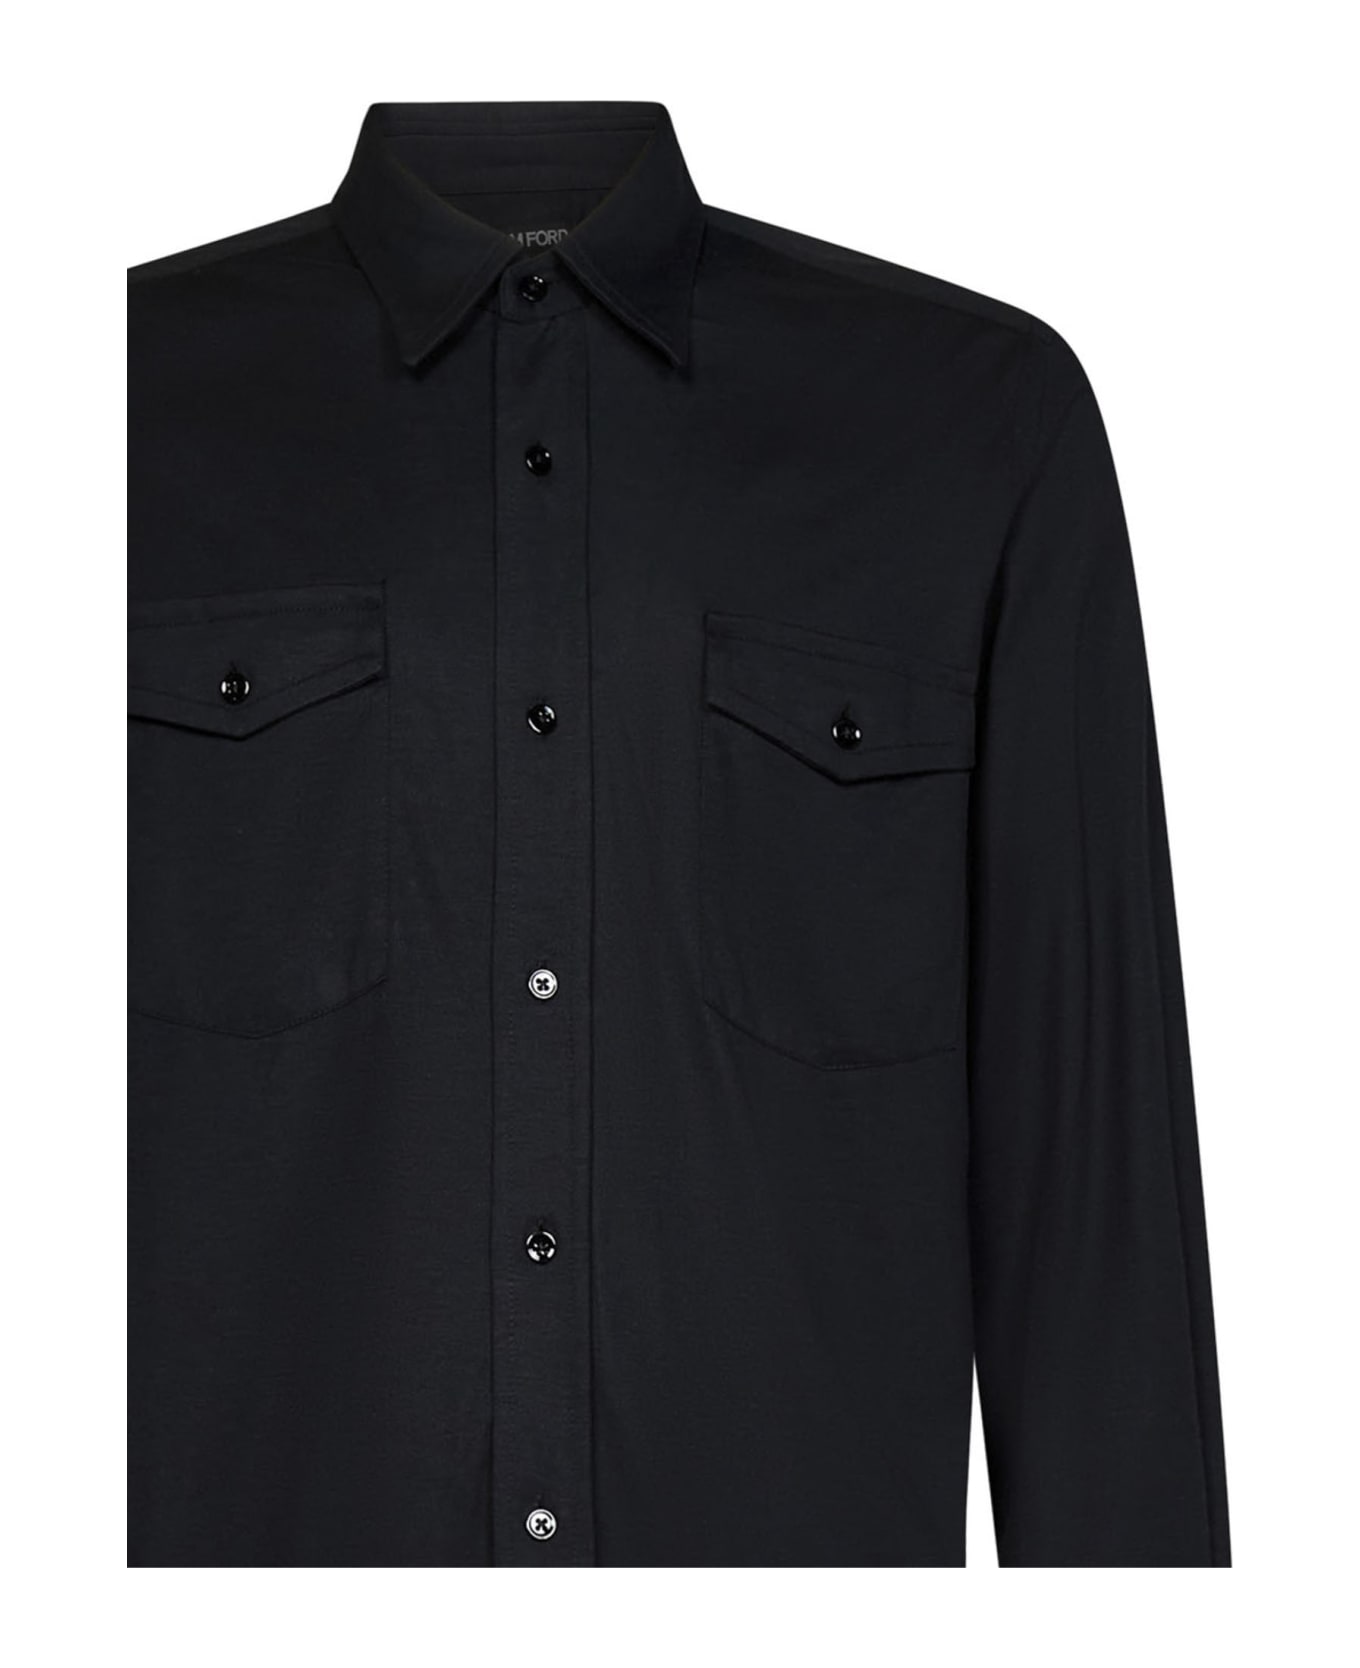 Tom Ford Shirt - Black シャツ